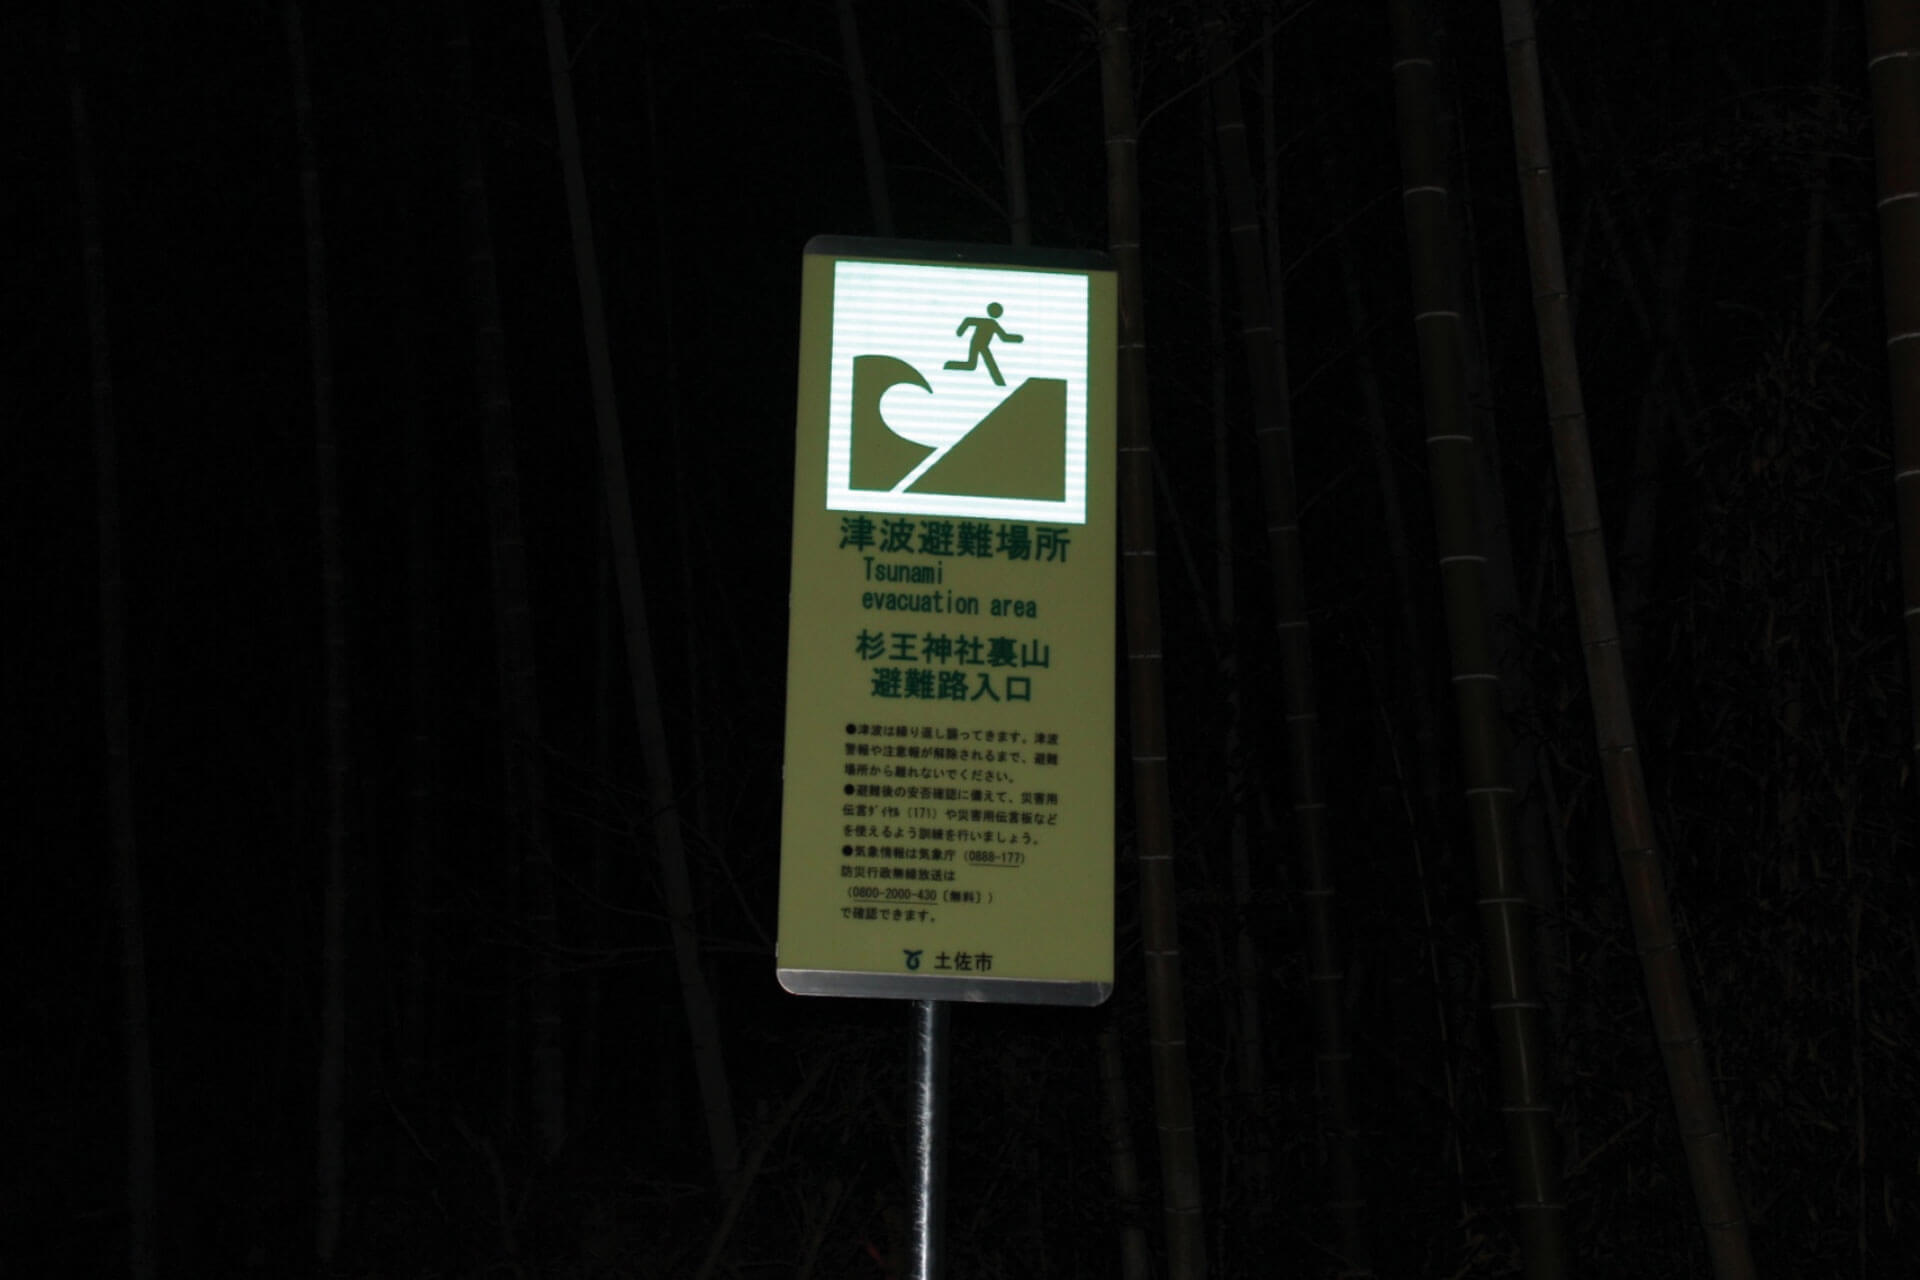 高知県土佐市の住宅地に設置されている杉王神社裏山避難路入口と表記されたアベイラス アルシオール サインプレート（高輝度蓄光式屋外用案内標示板）の再帰反射した状態